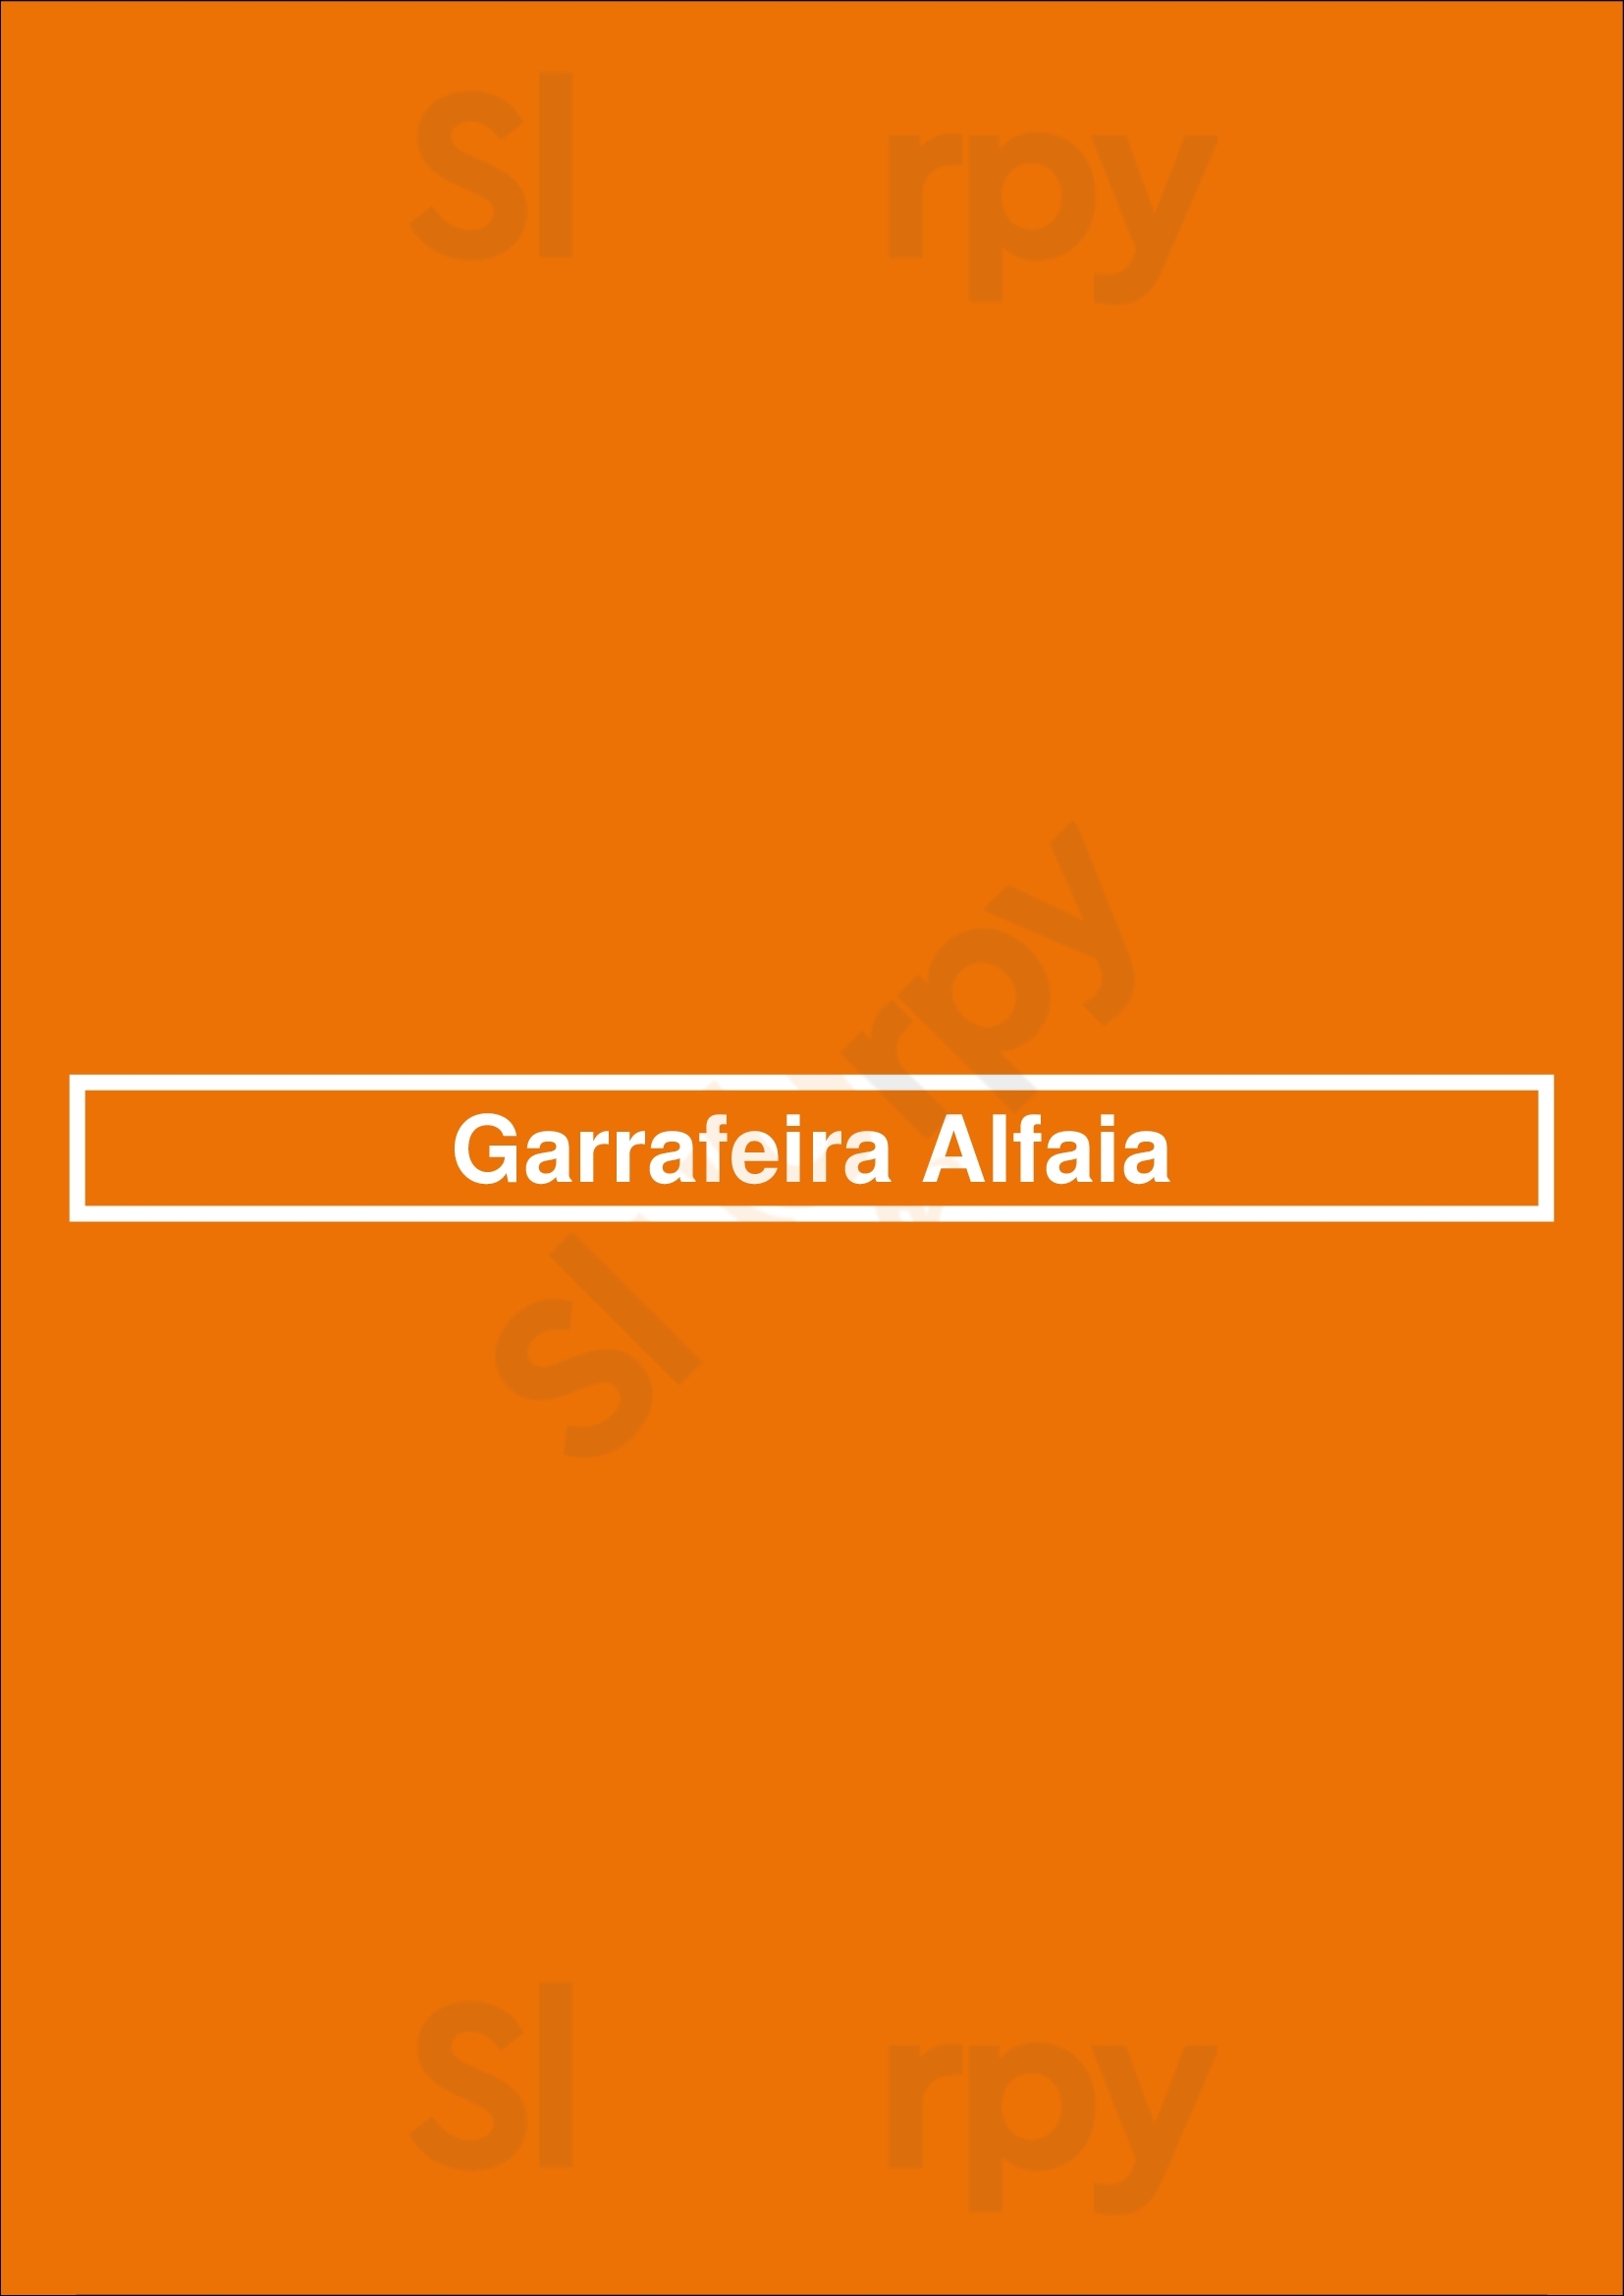 Garrafeira Alfaia Lisboa Menu - 1